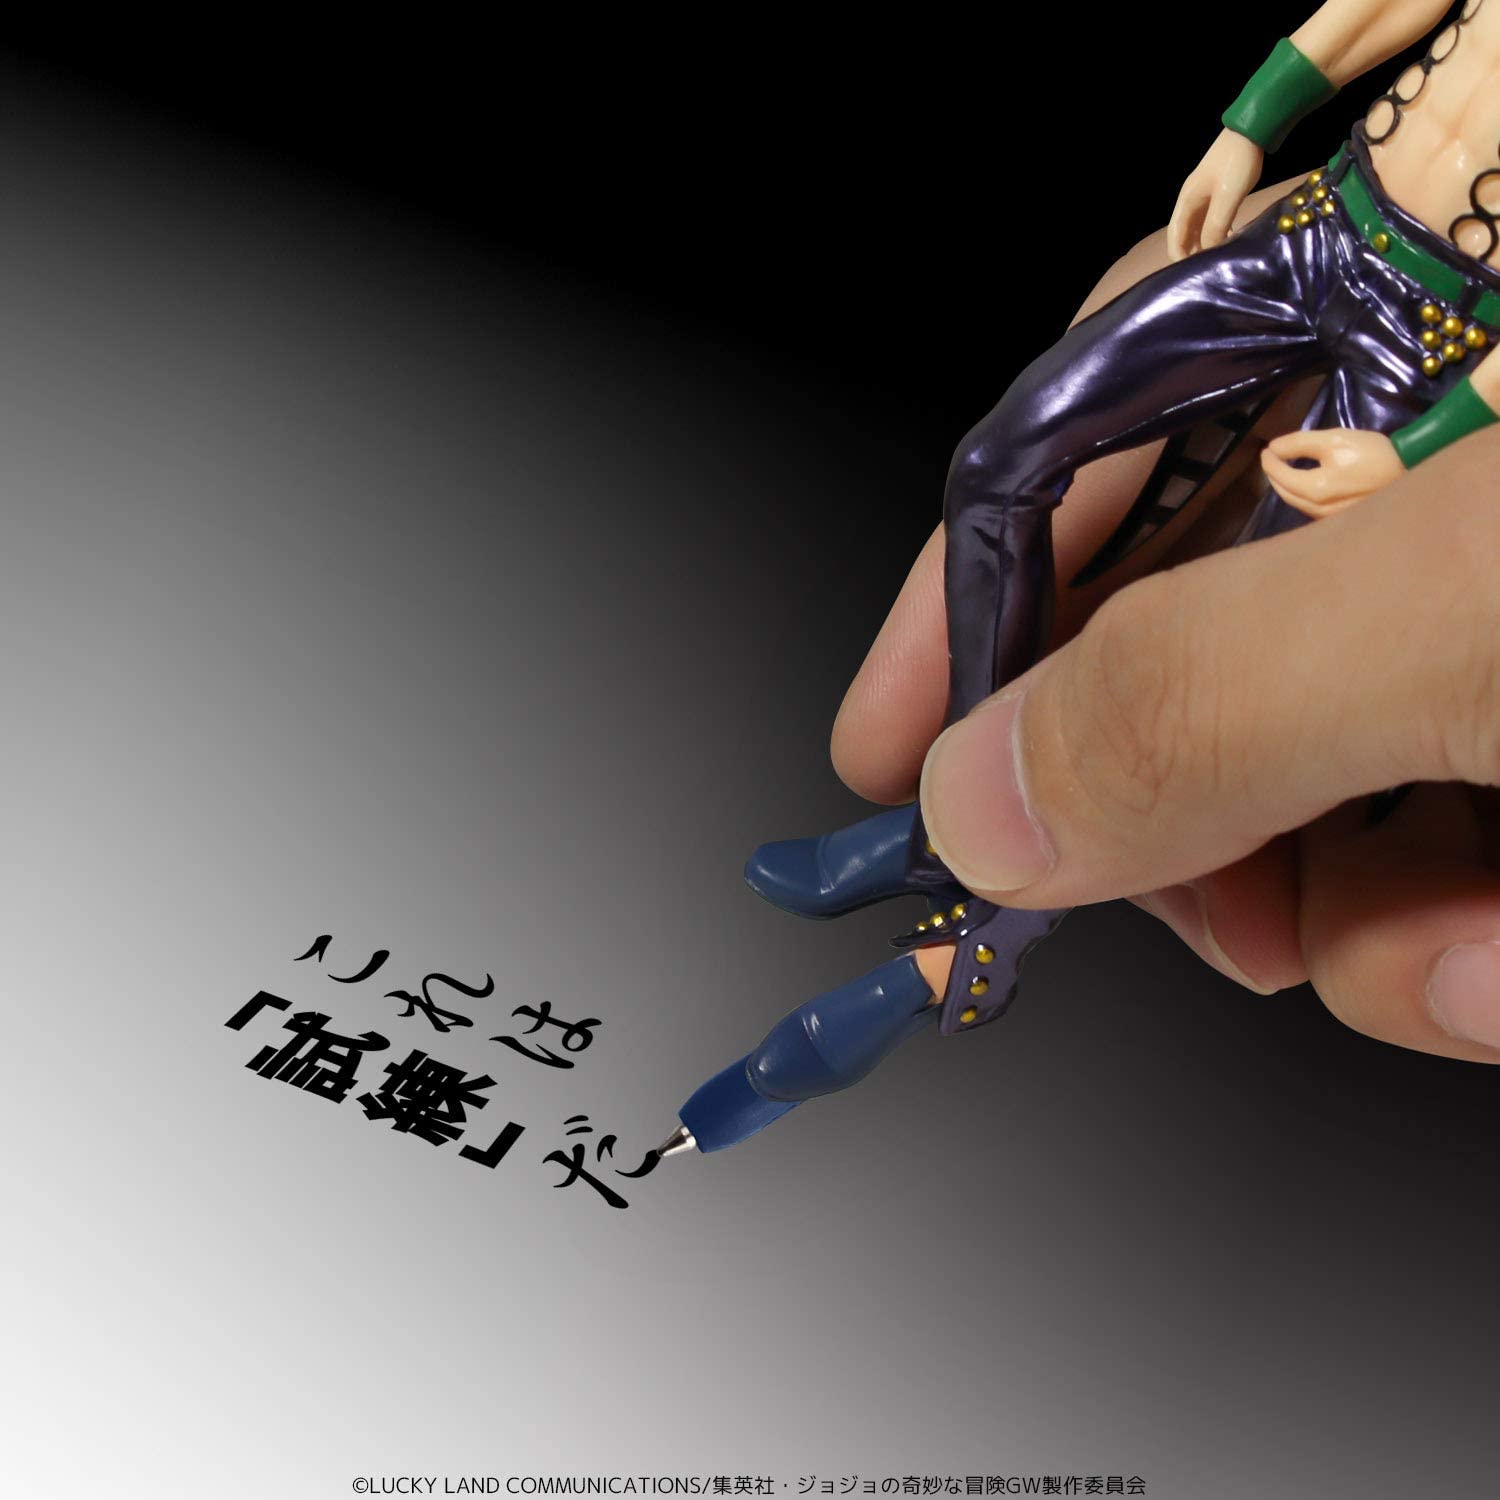 TV Anime "JoJo's Bizarre Adventure Golden Wind" Diavolo Figure Pen | animota